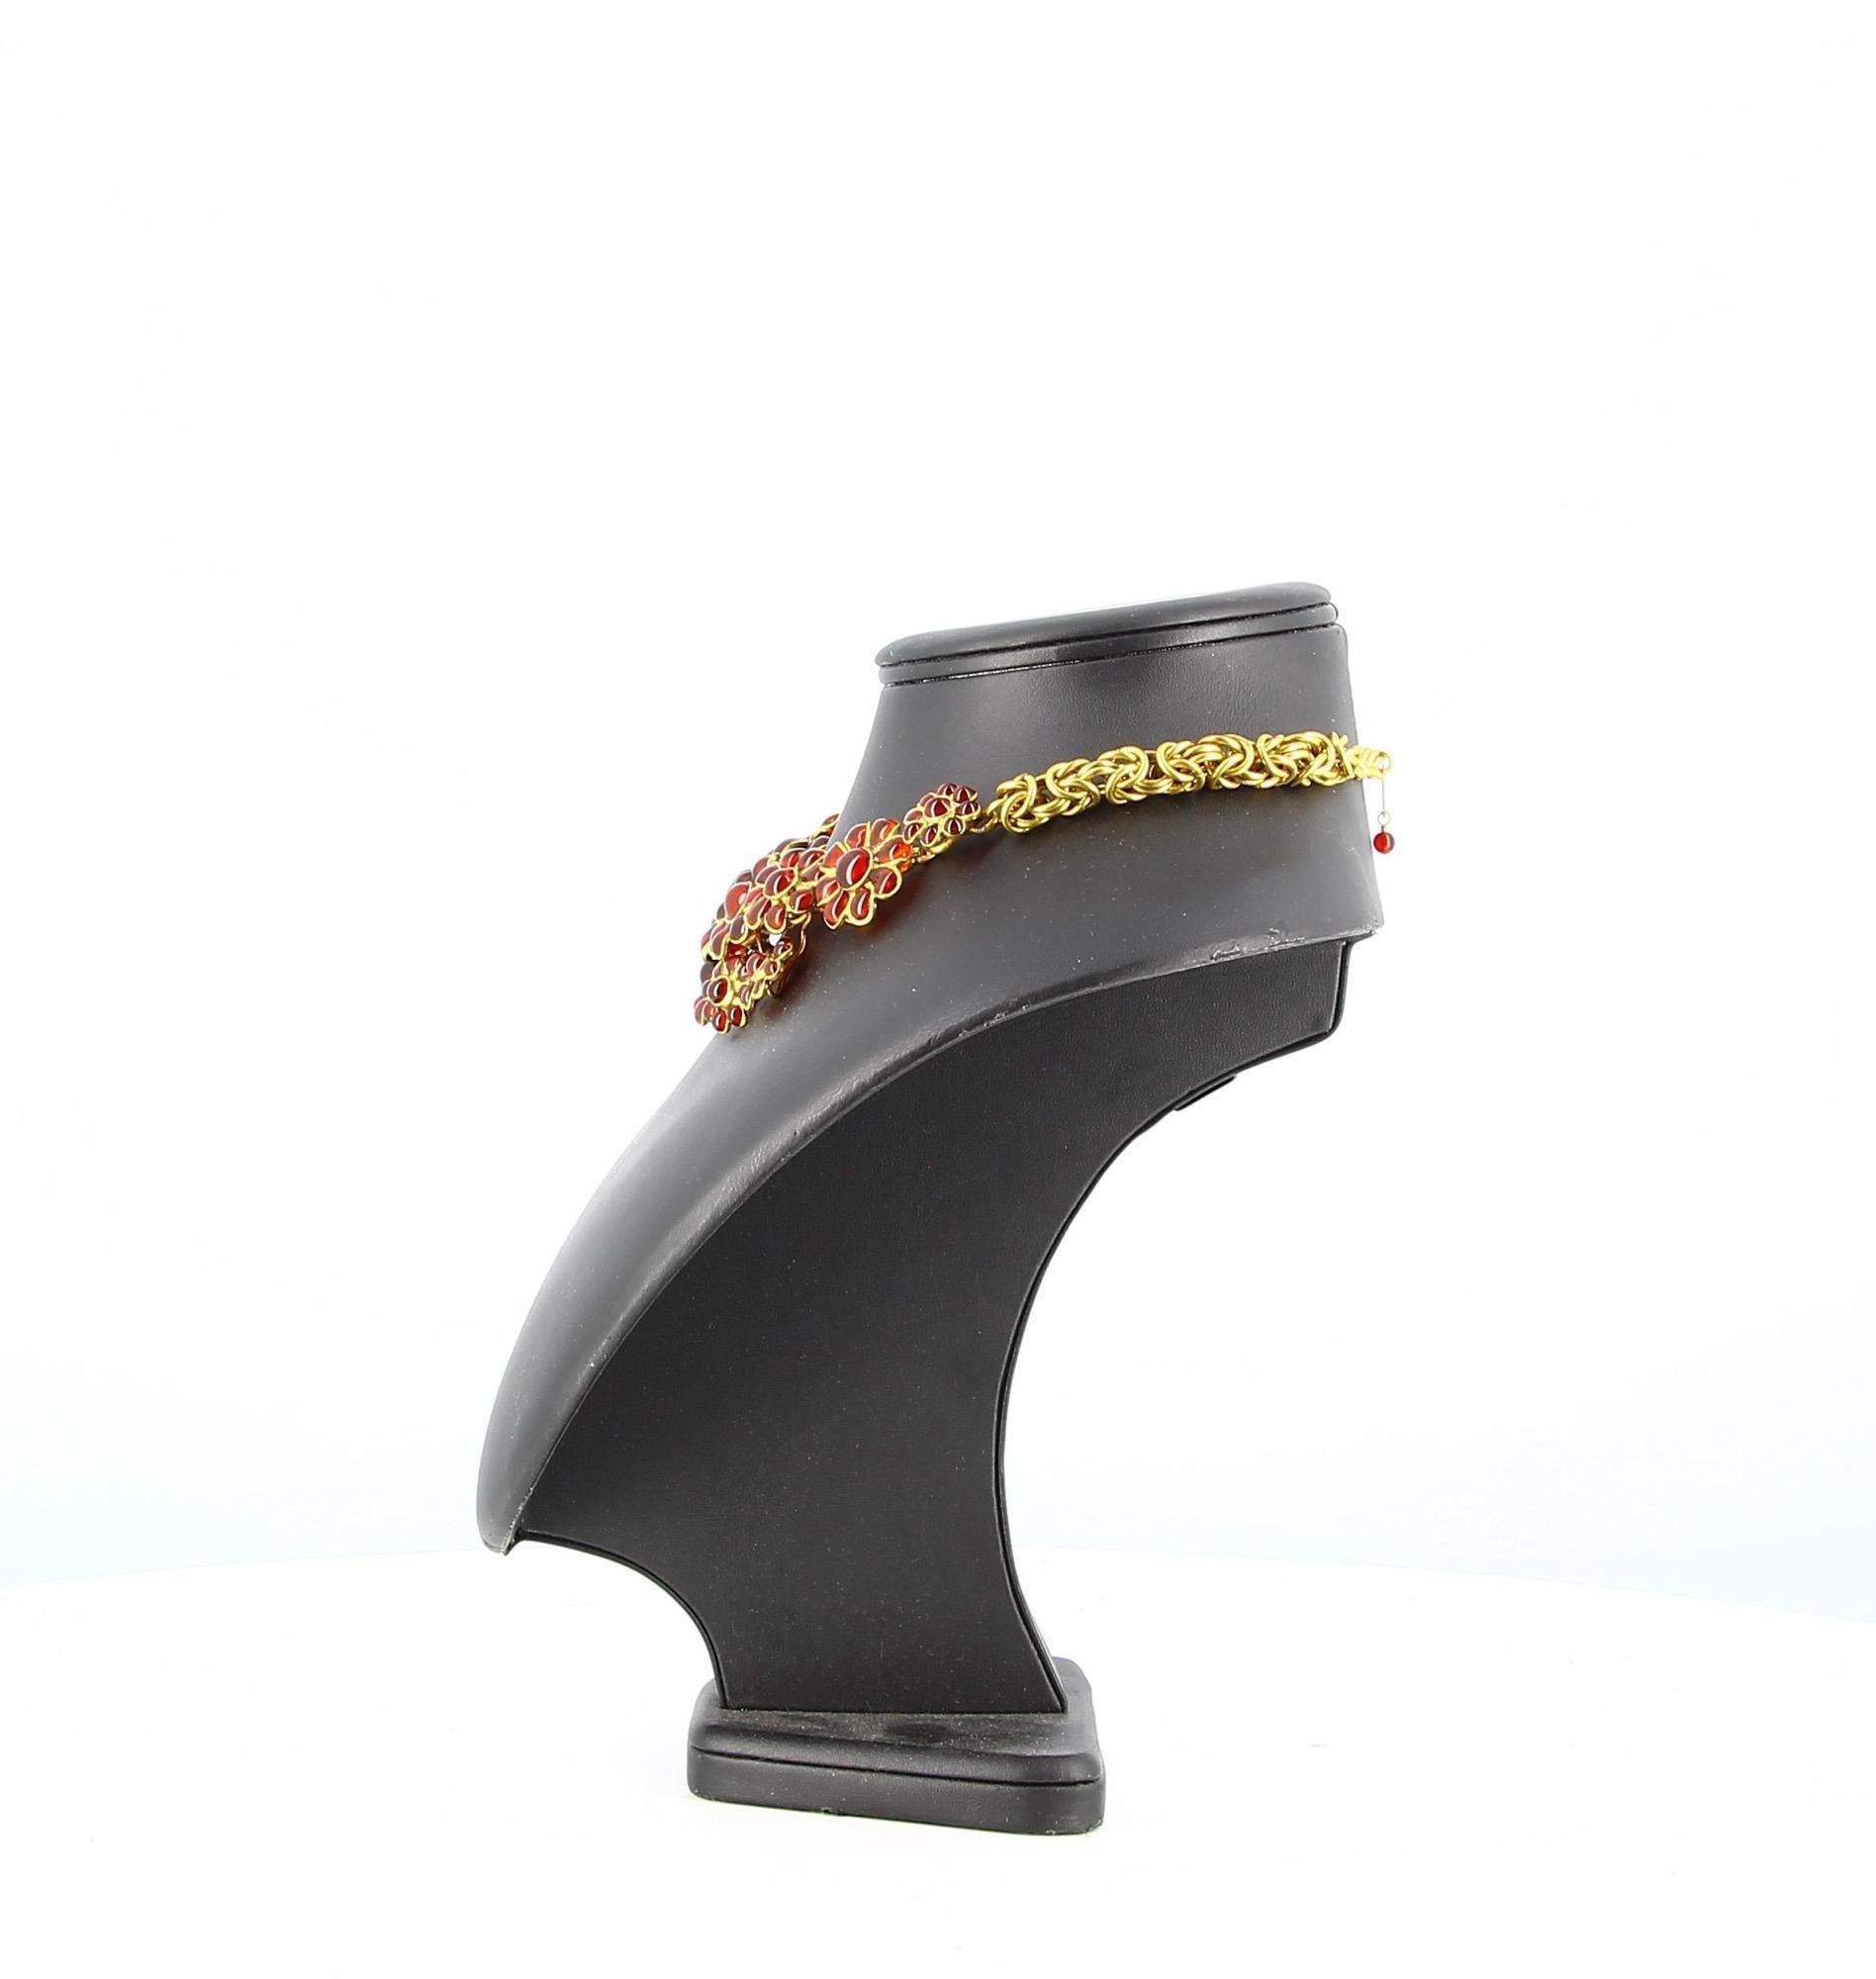 Chanel Vintage-Halskette Gripoix aus gegossenem Glas und vergoldetem Metall.
Wirklich guter Vintage-Zustand, einige leichte Gebrauchsspuren auf der Rückseite des Metalls.
Auf der Rückseite mit einem Schild signiert.